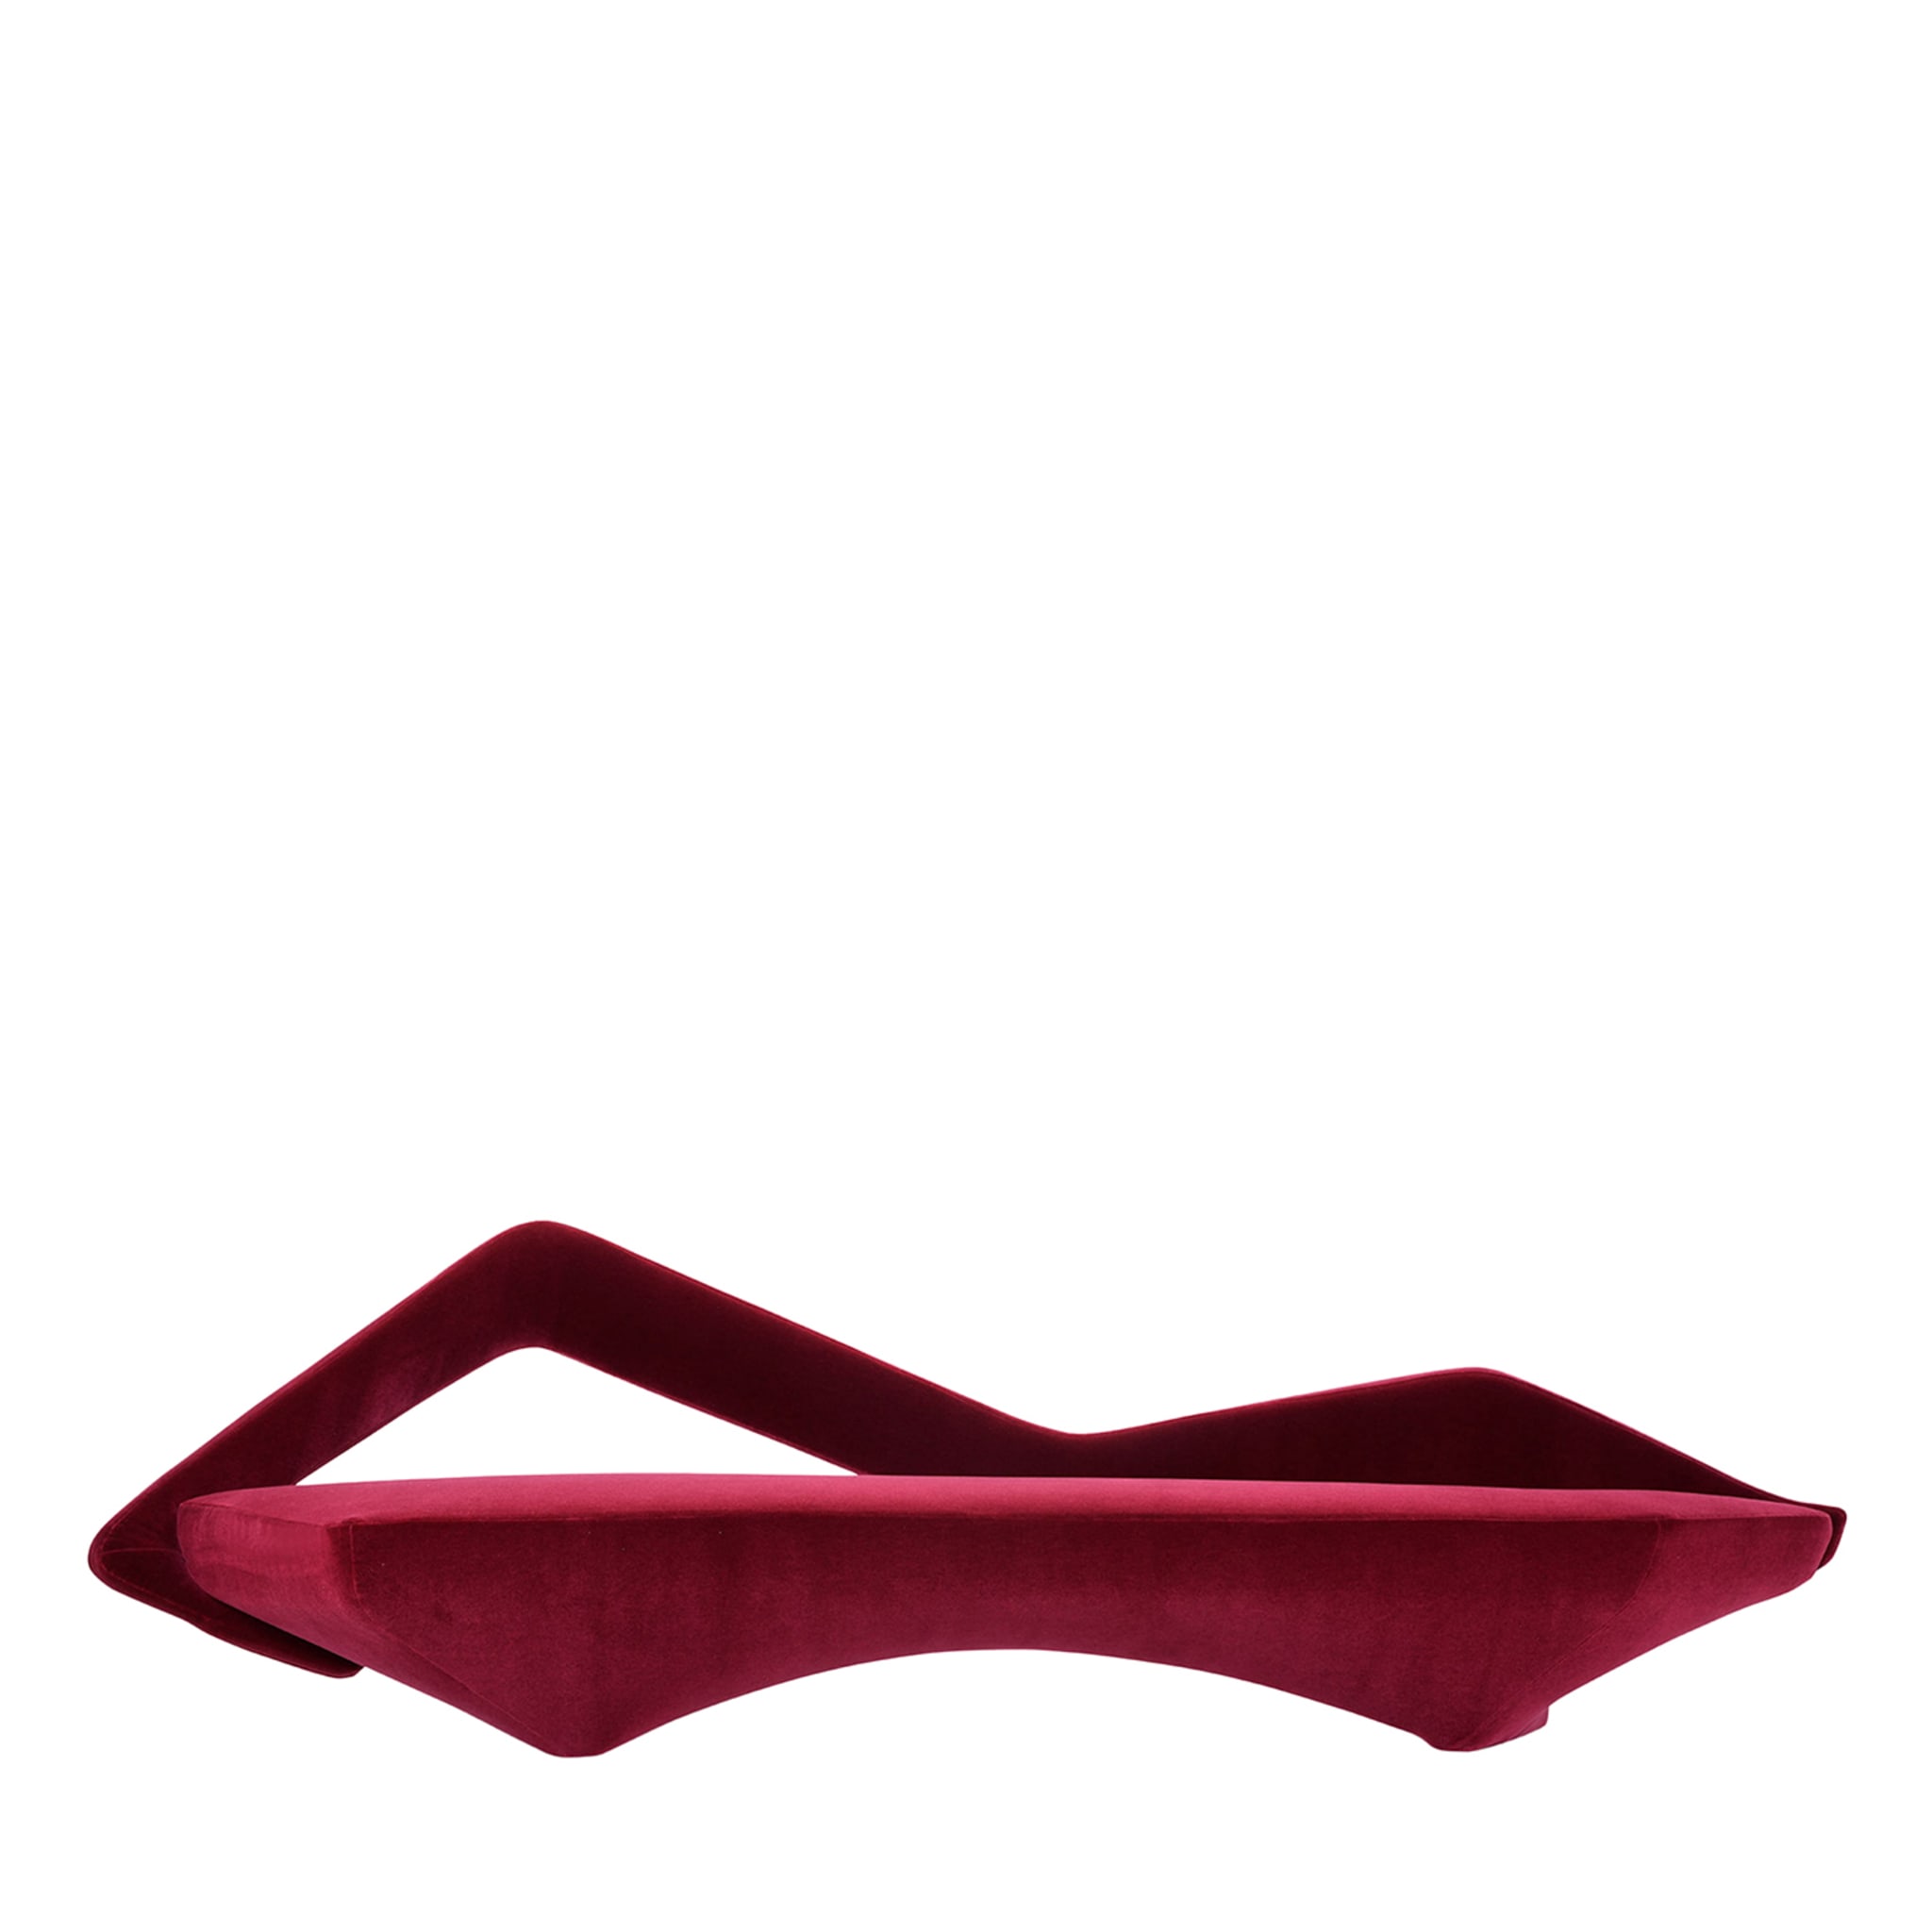 Weiches maschinelles burgunderfarbenes sofa von Giovanni Tommaso Garattoni - Hauptansicht